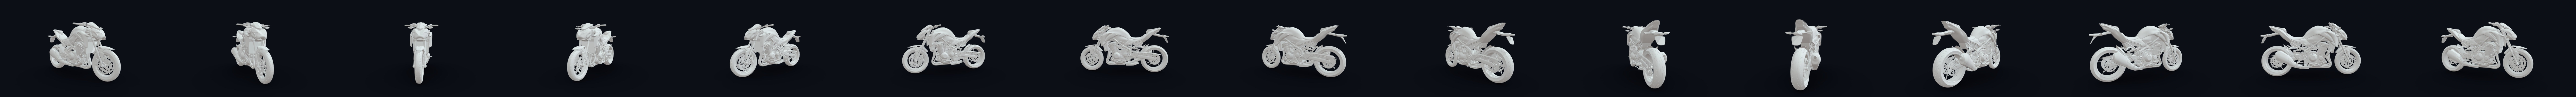 Kawasaki Z900 2017 Modelo 3D - Descargar Vehículos on